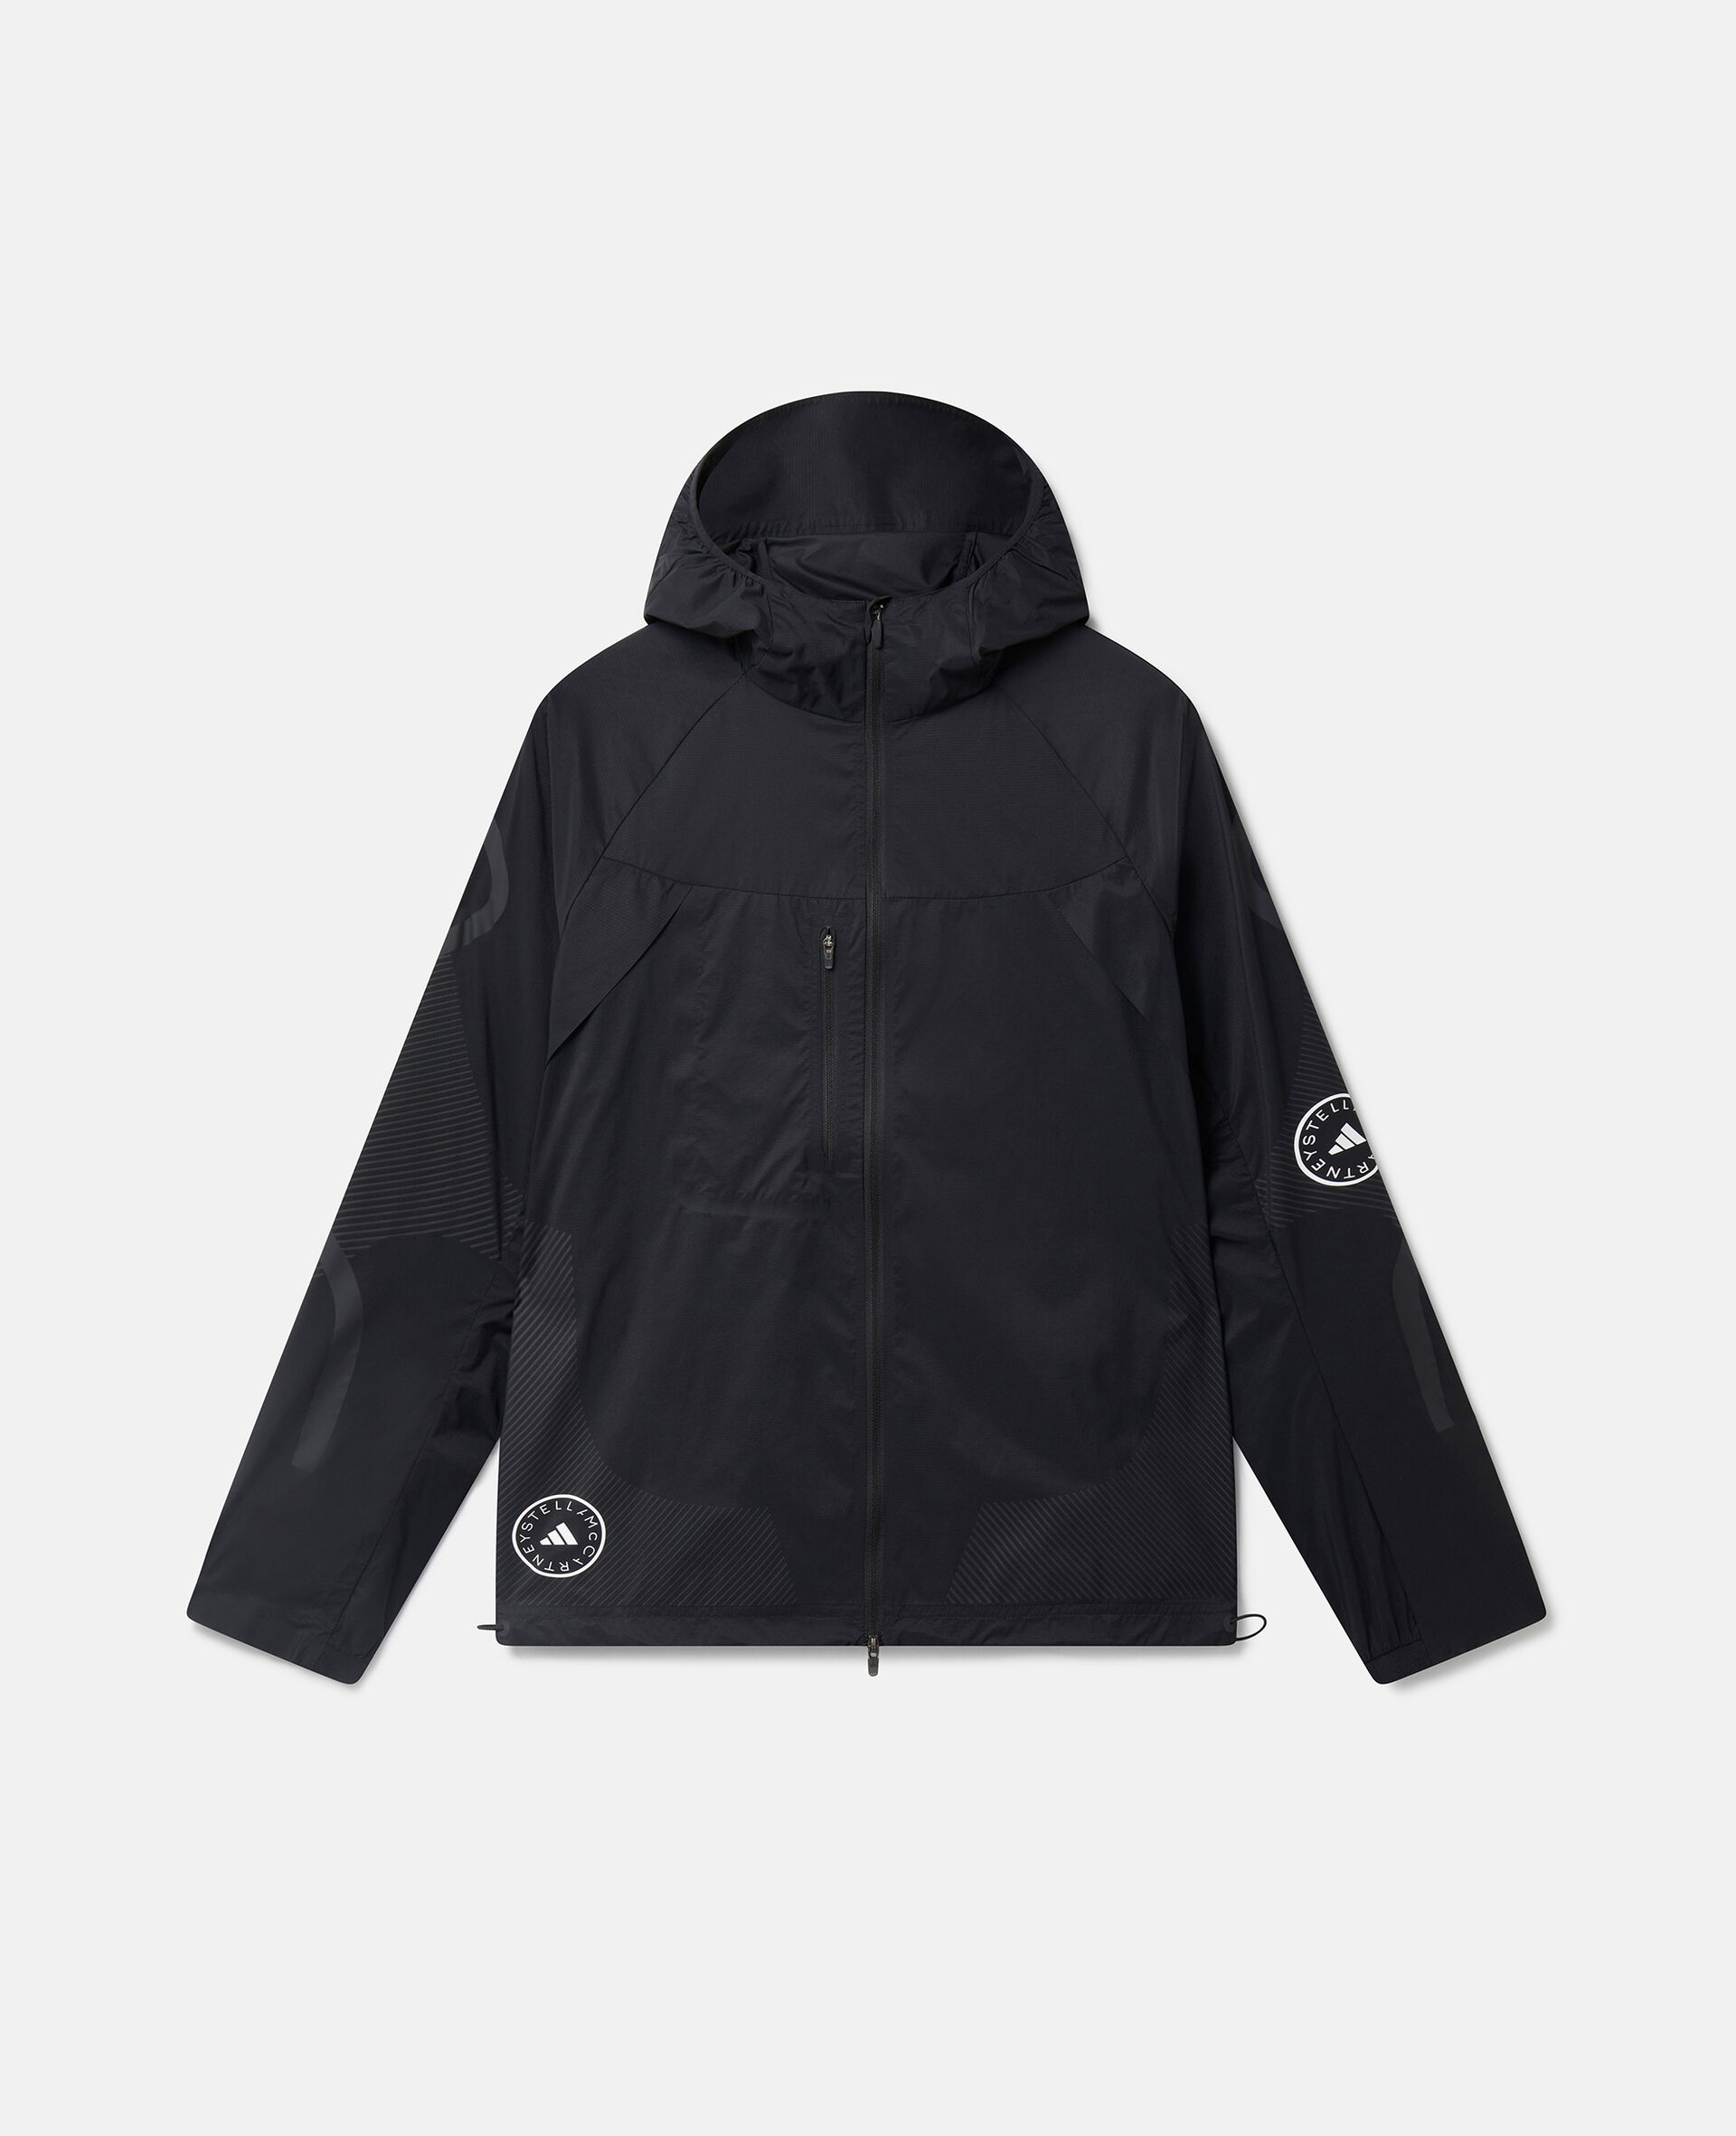 TruePace フード付きランニングジャケット-ブラック-medium